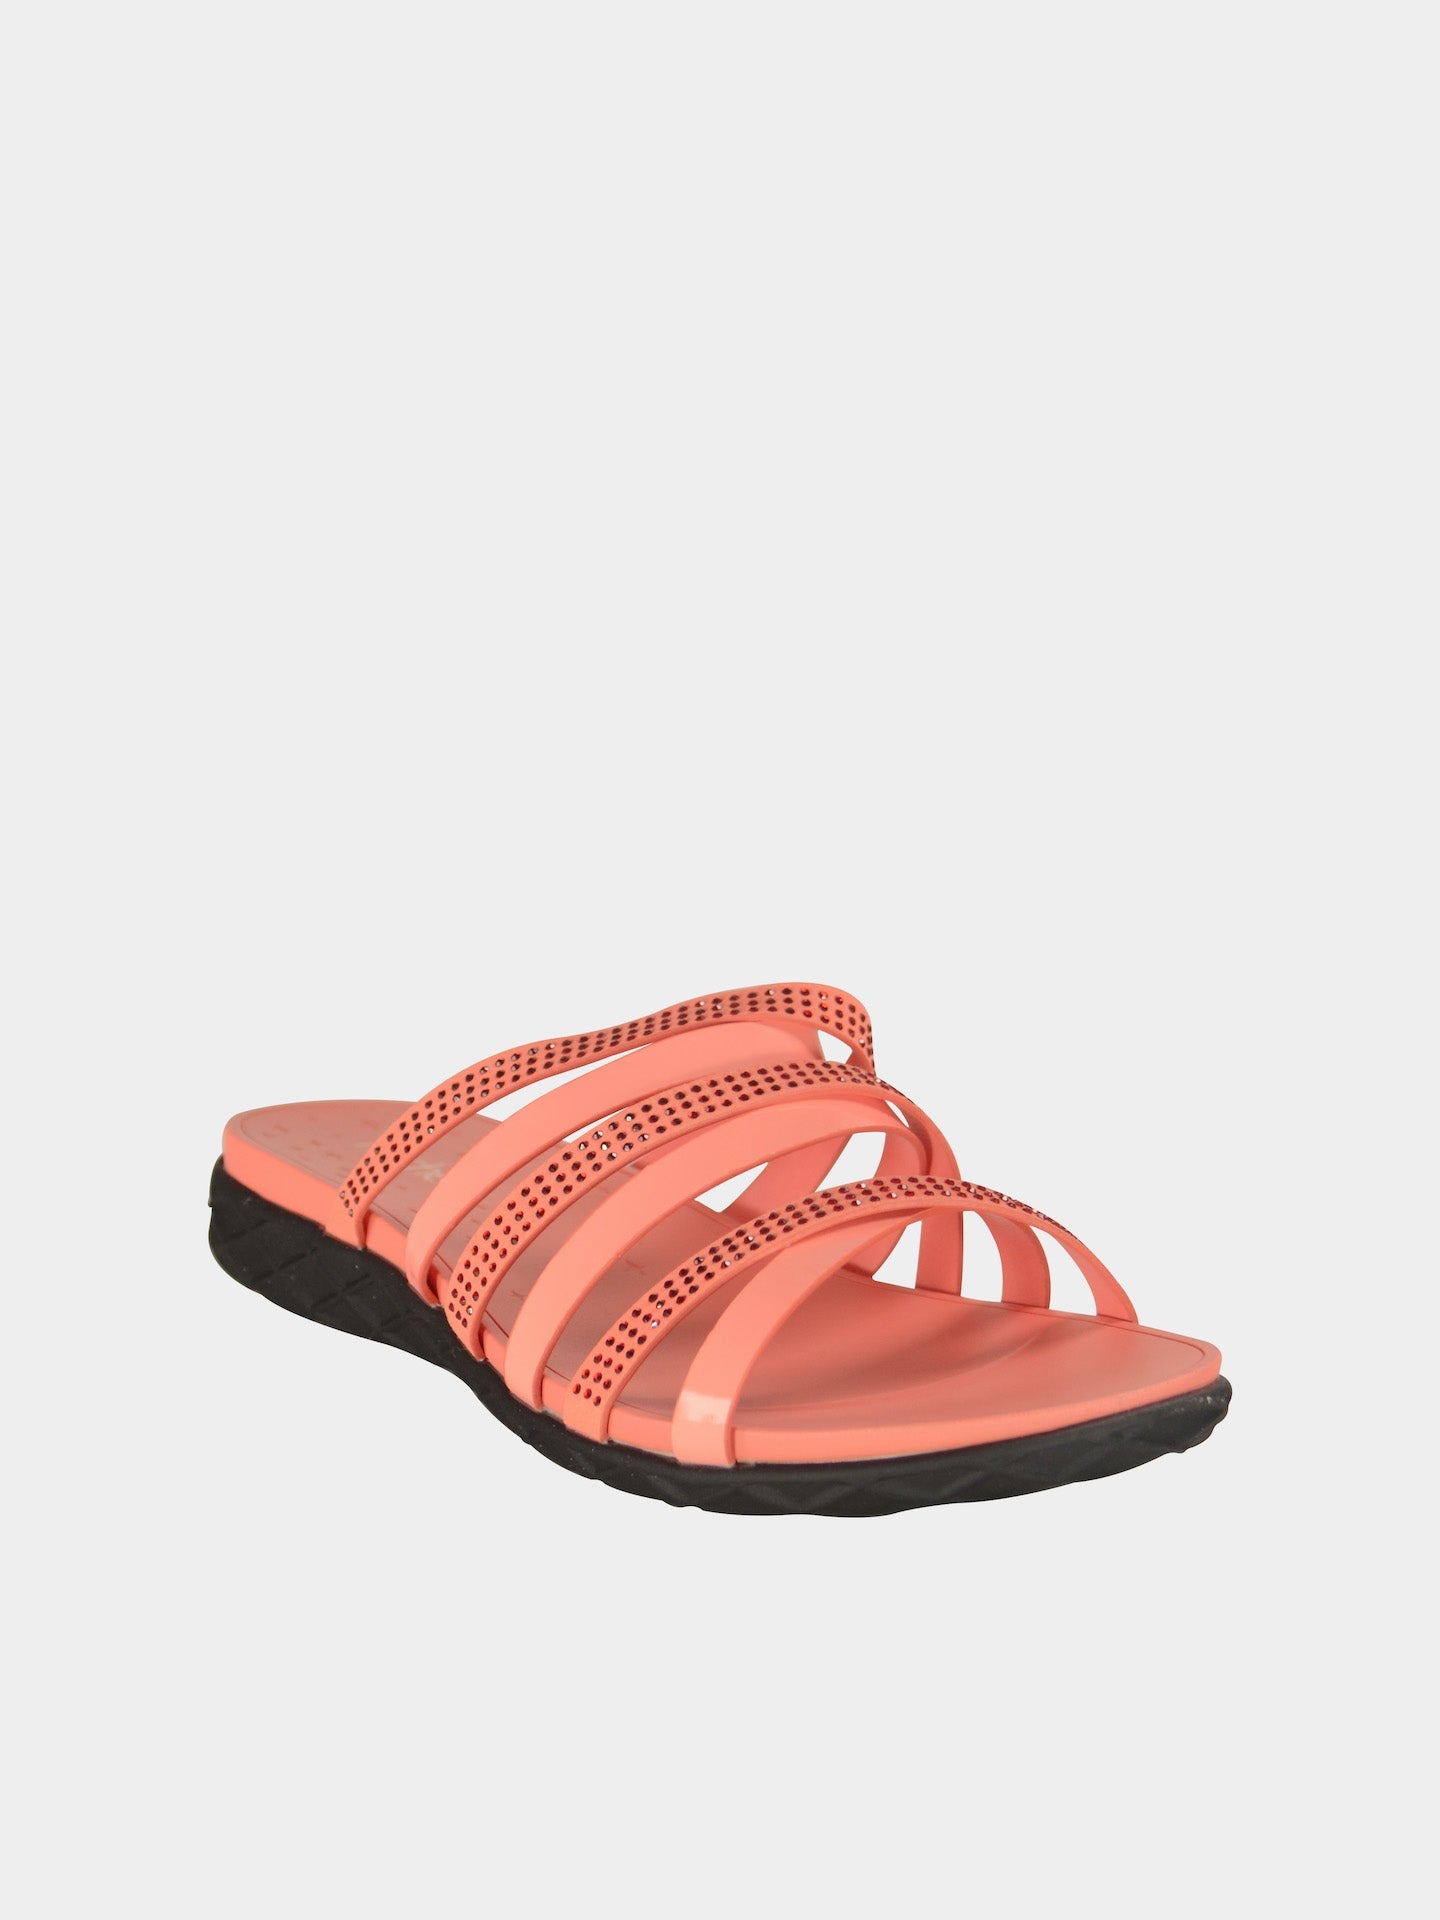 Michelle Morgan 814081 Women's Sandals #color_Pink